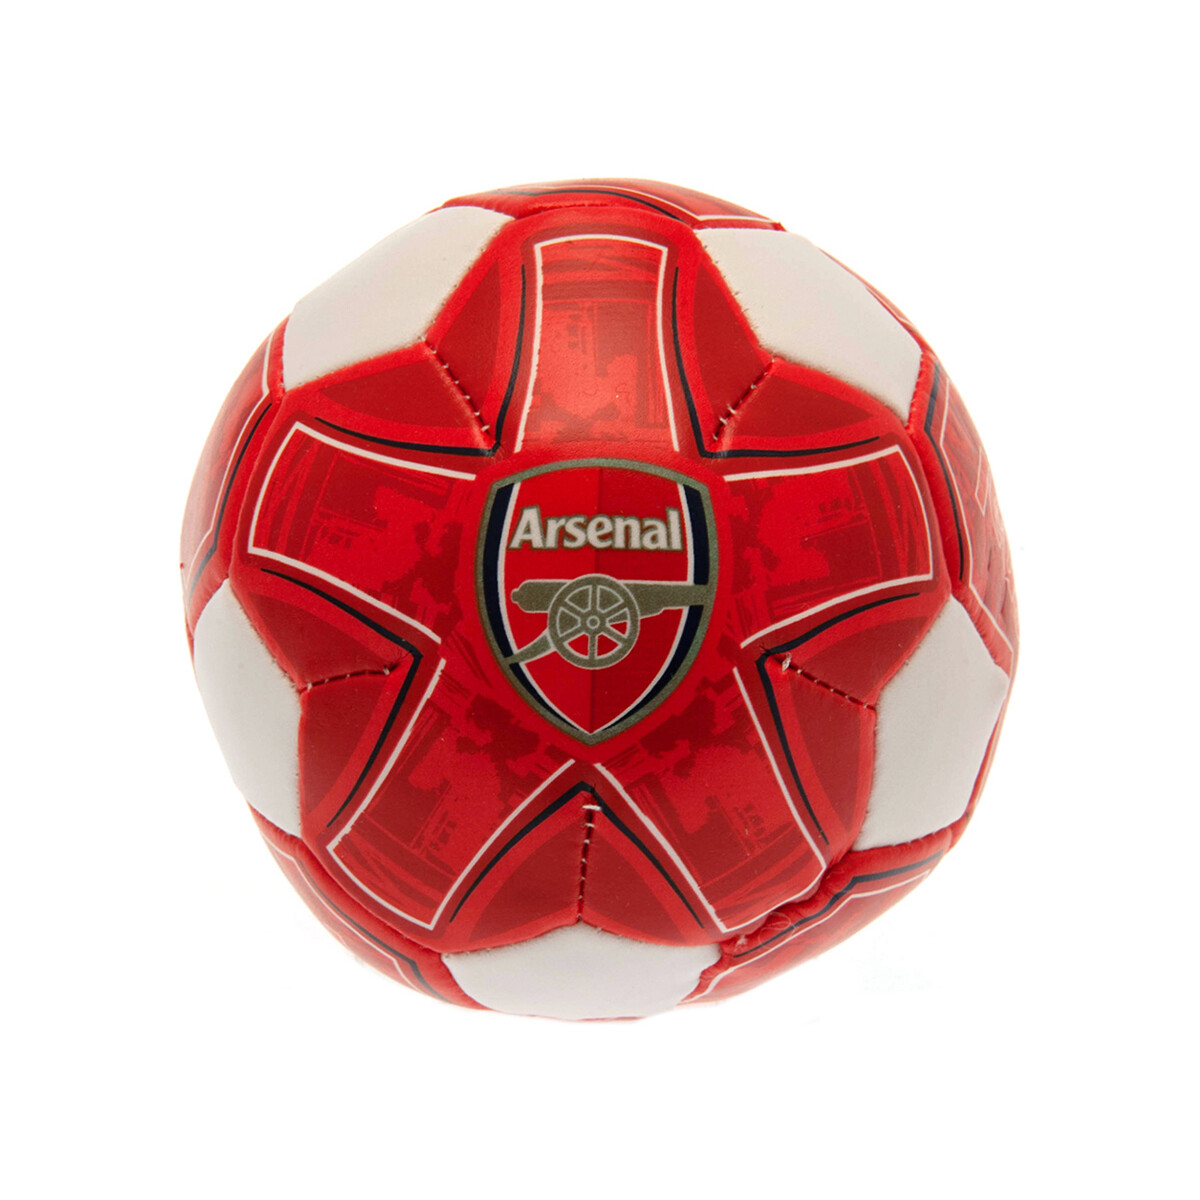 Accesorios Complemento para deporte Arsenal Fc BS3307 Rojo